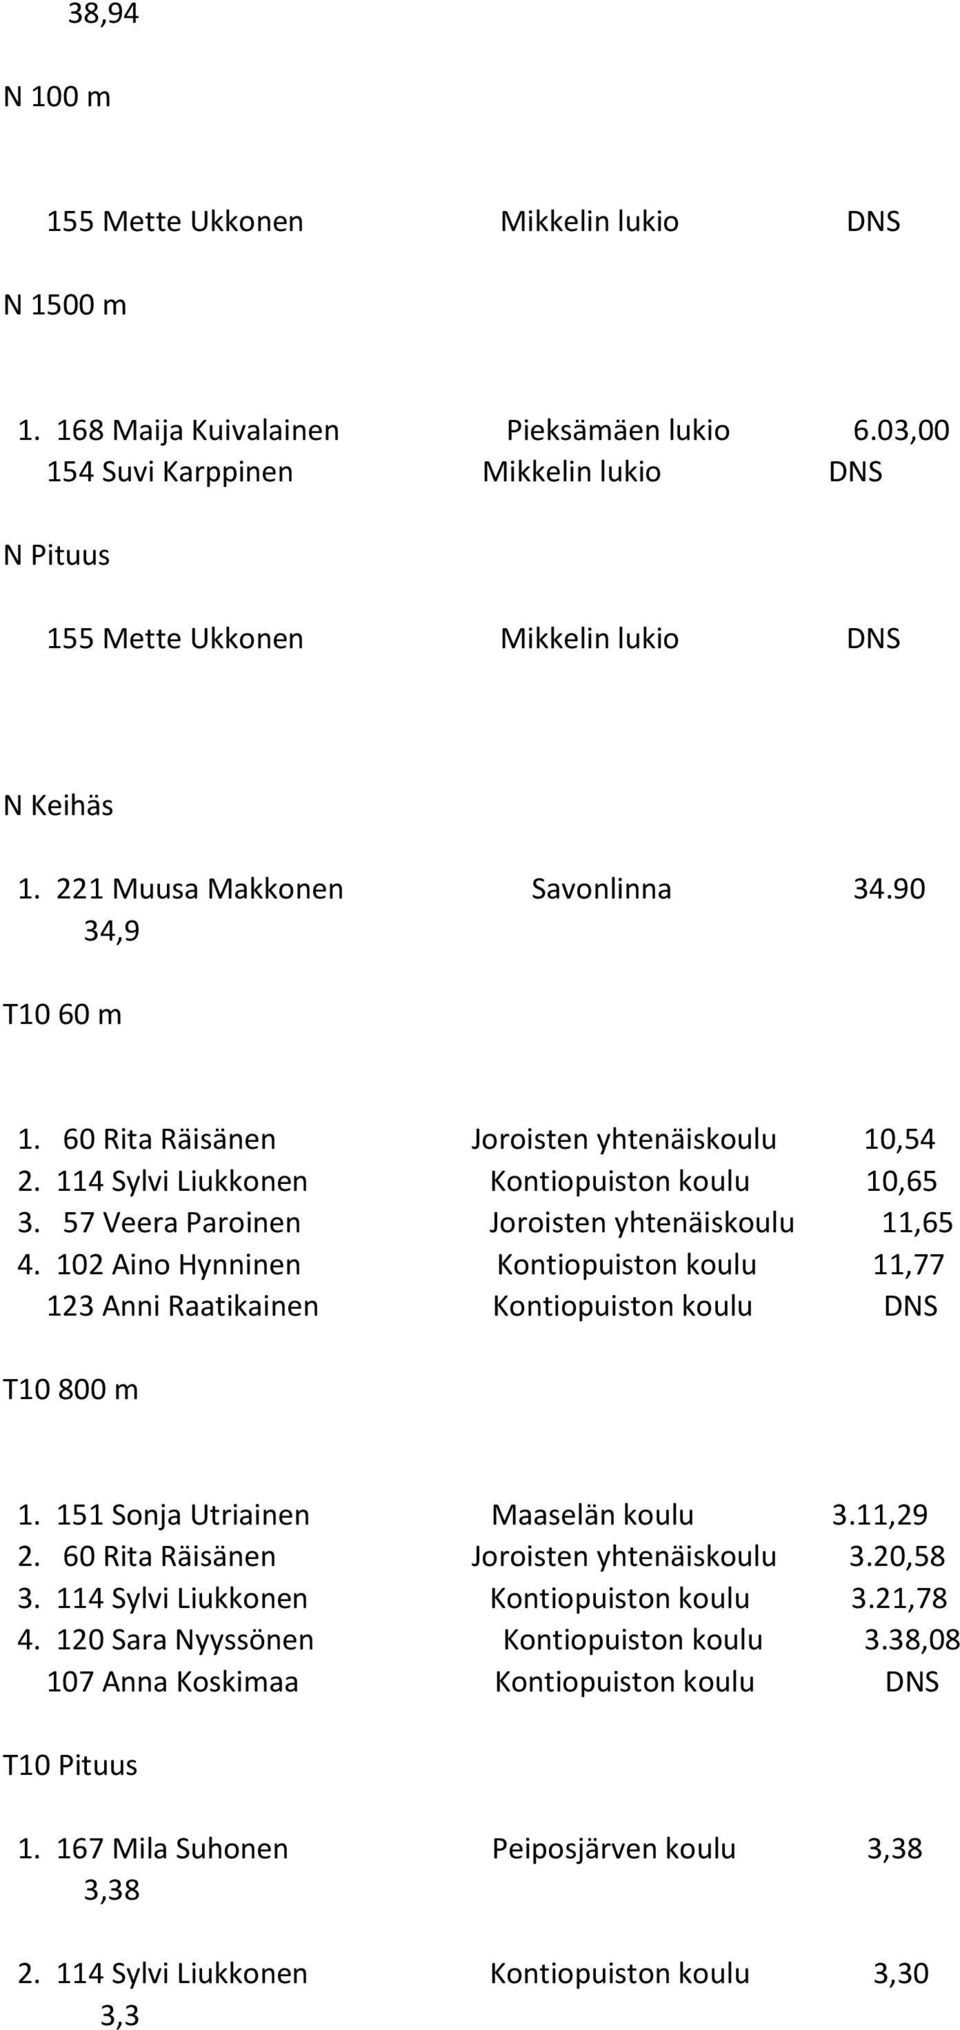 60 Rita Räisänen Joroisten yhtenäiskoulu 10,54 2. 114 Sylvi Liukkonen Kontiopuiston koulu 10,65 3. 57 Veera Paroinen Joroisten yhtenäiskoulu 11,65 4.